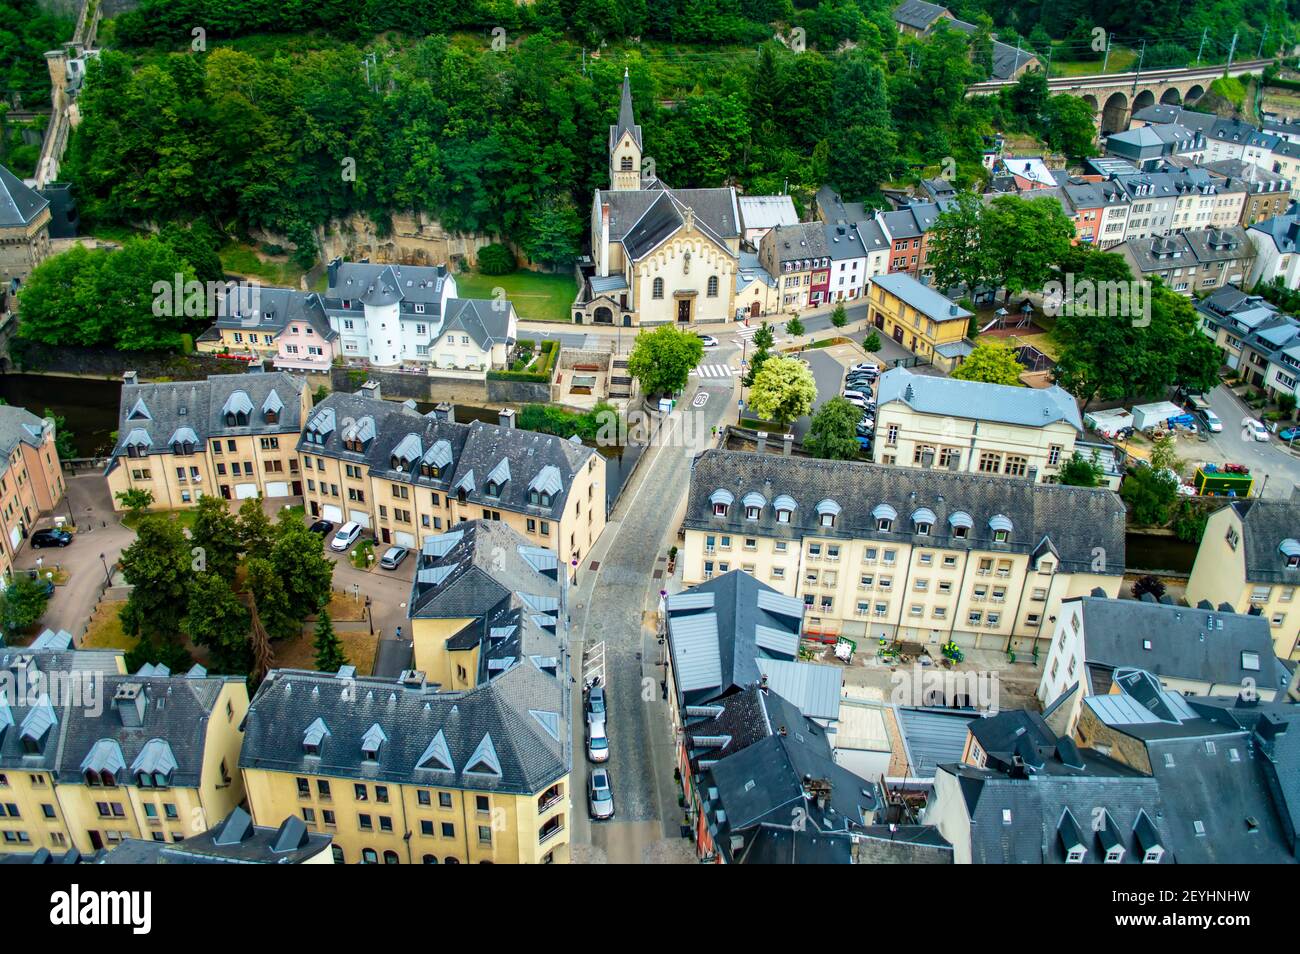 Luxemburgo ciudad, Luxemburgo - 15 de julio de 2019: Vista aérea de las casas con tejados grises en el casco antiguo de la ciudad de Luxemburgo Foto de stock